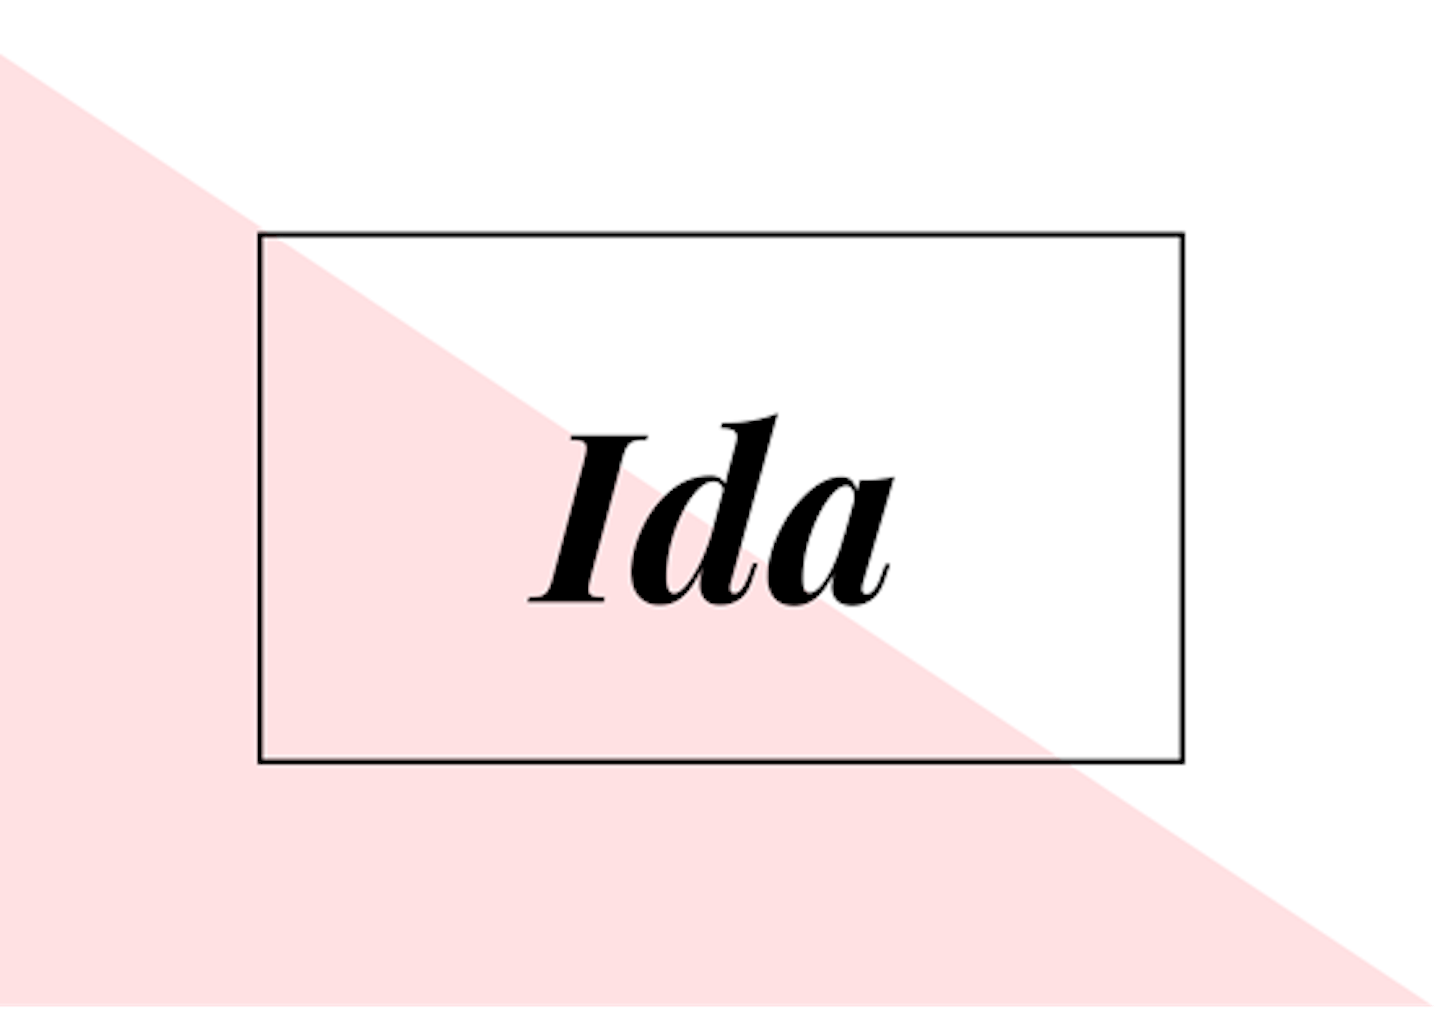 14) Ida